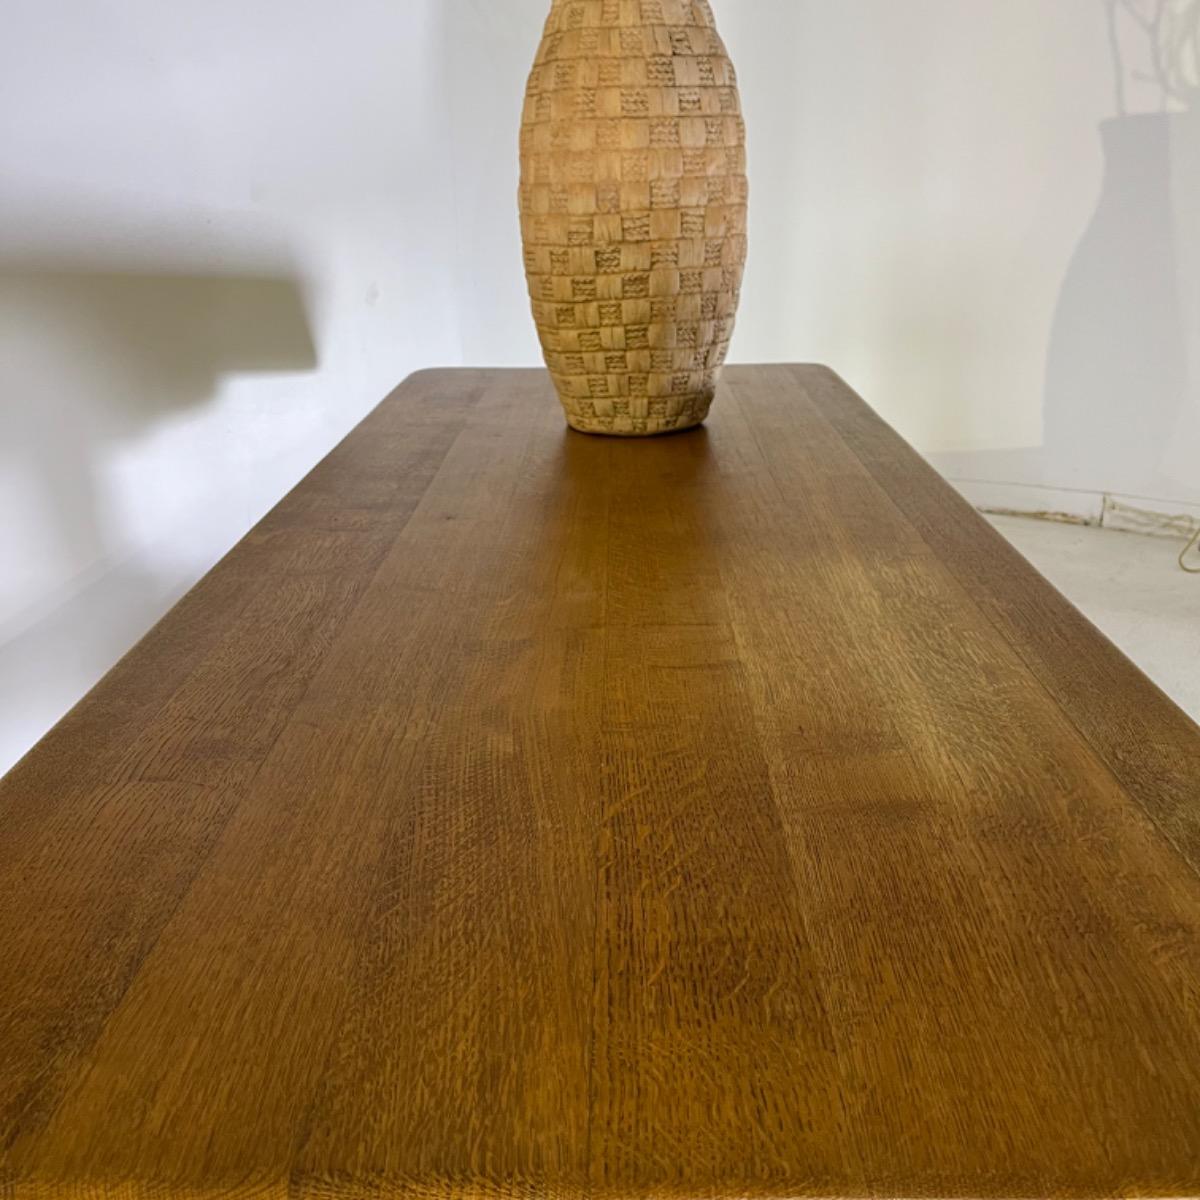 1960 rustic modern oak table